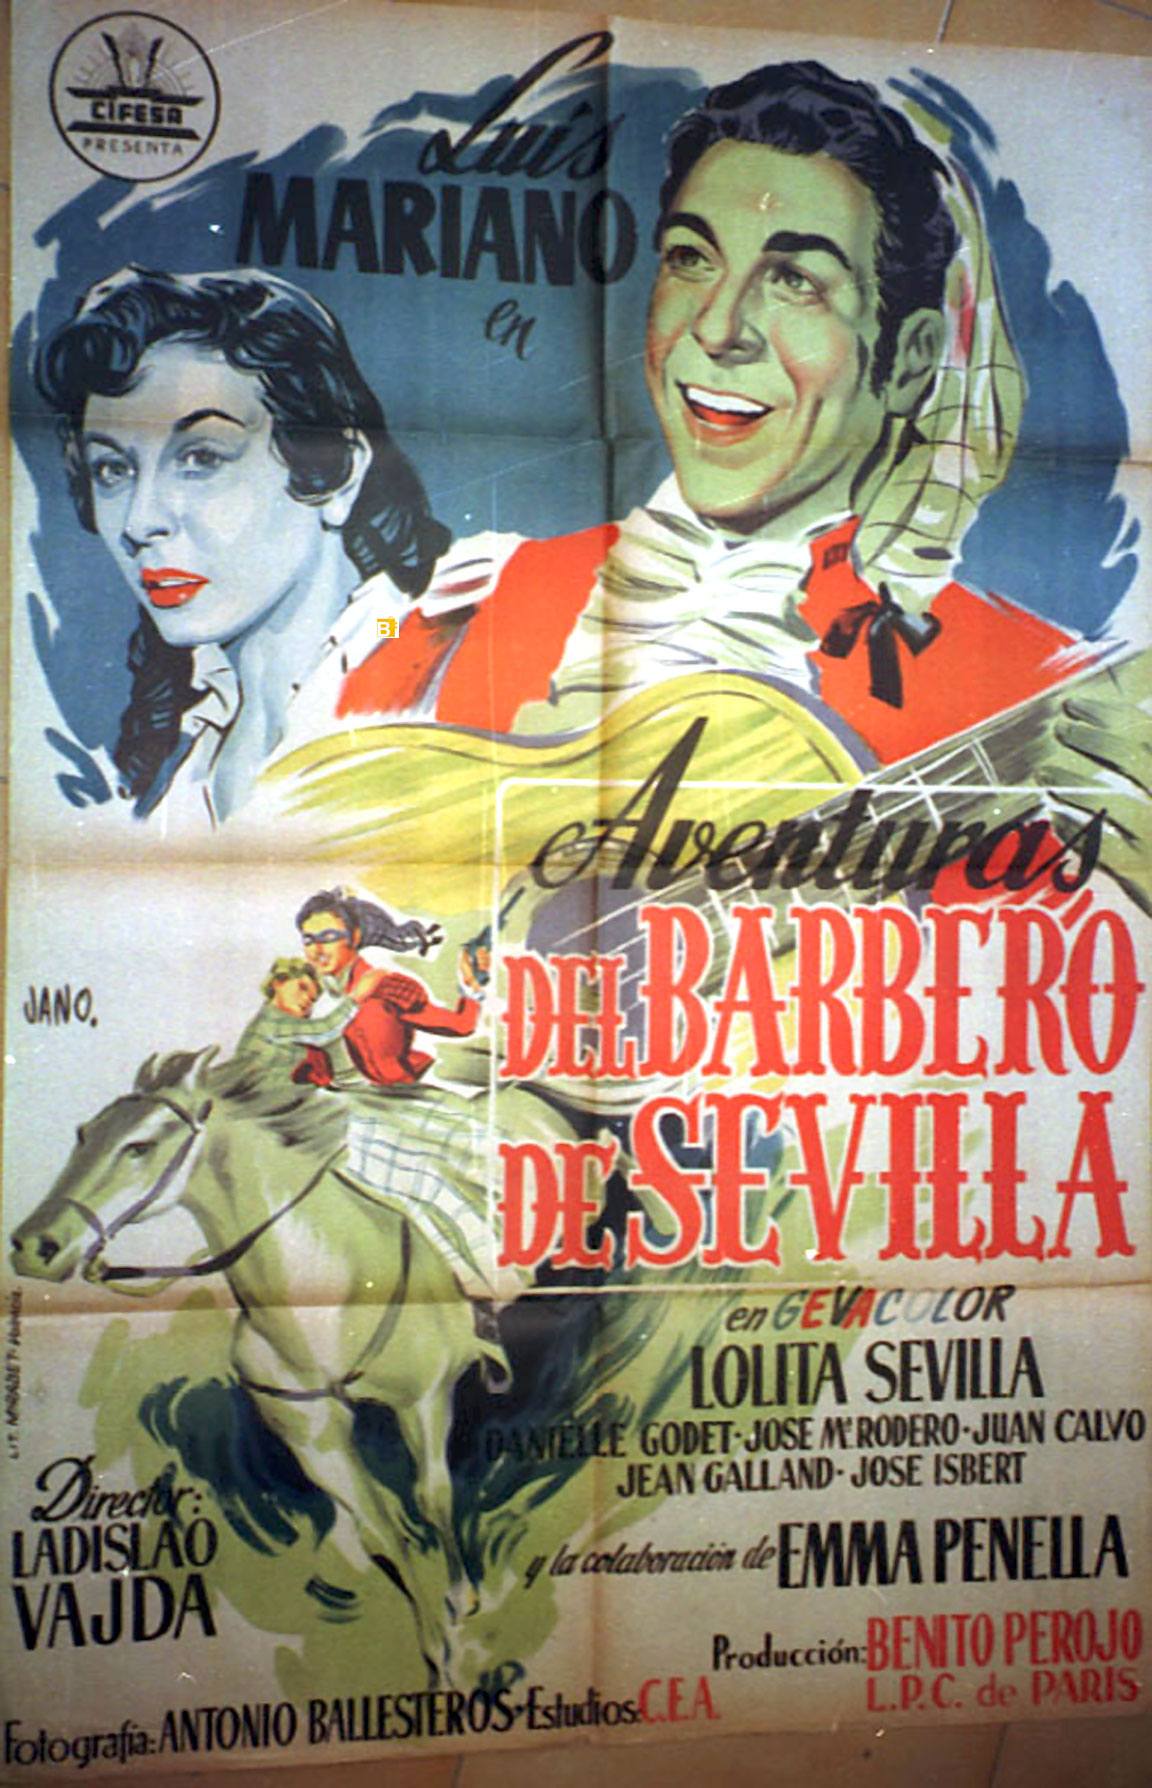 Aventuras del barbero de Sevilla movie